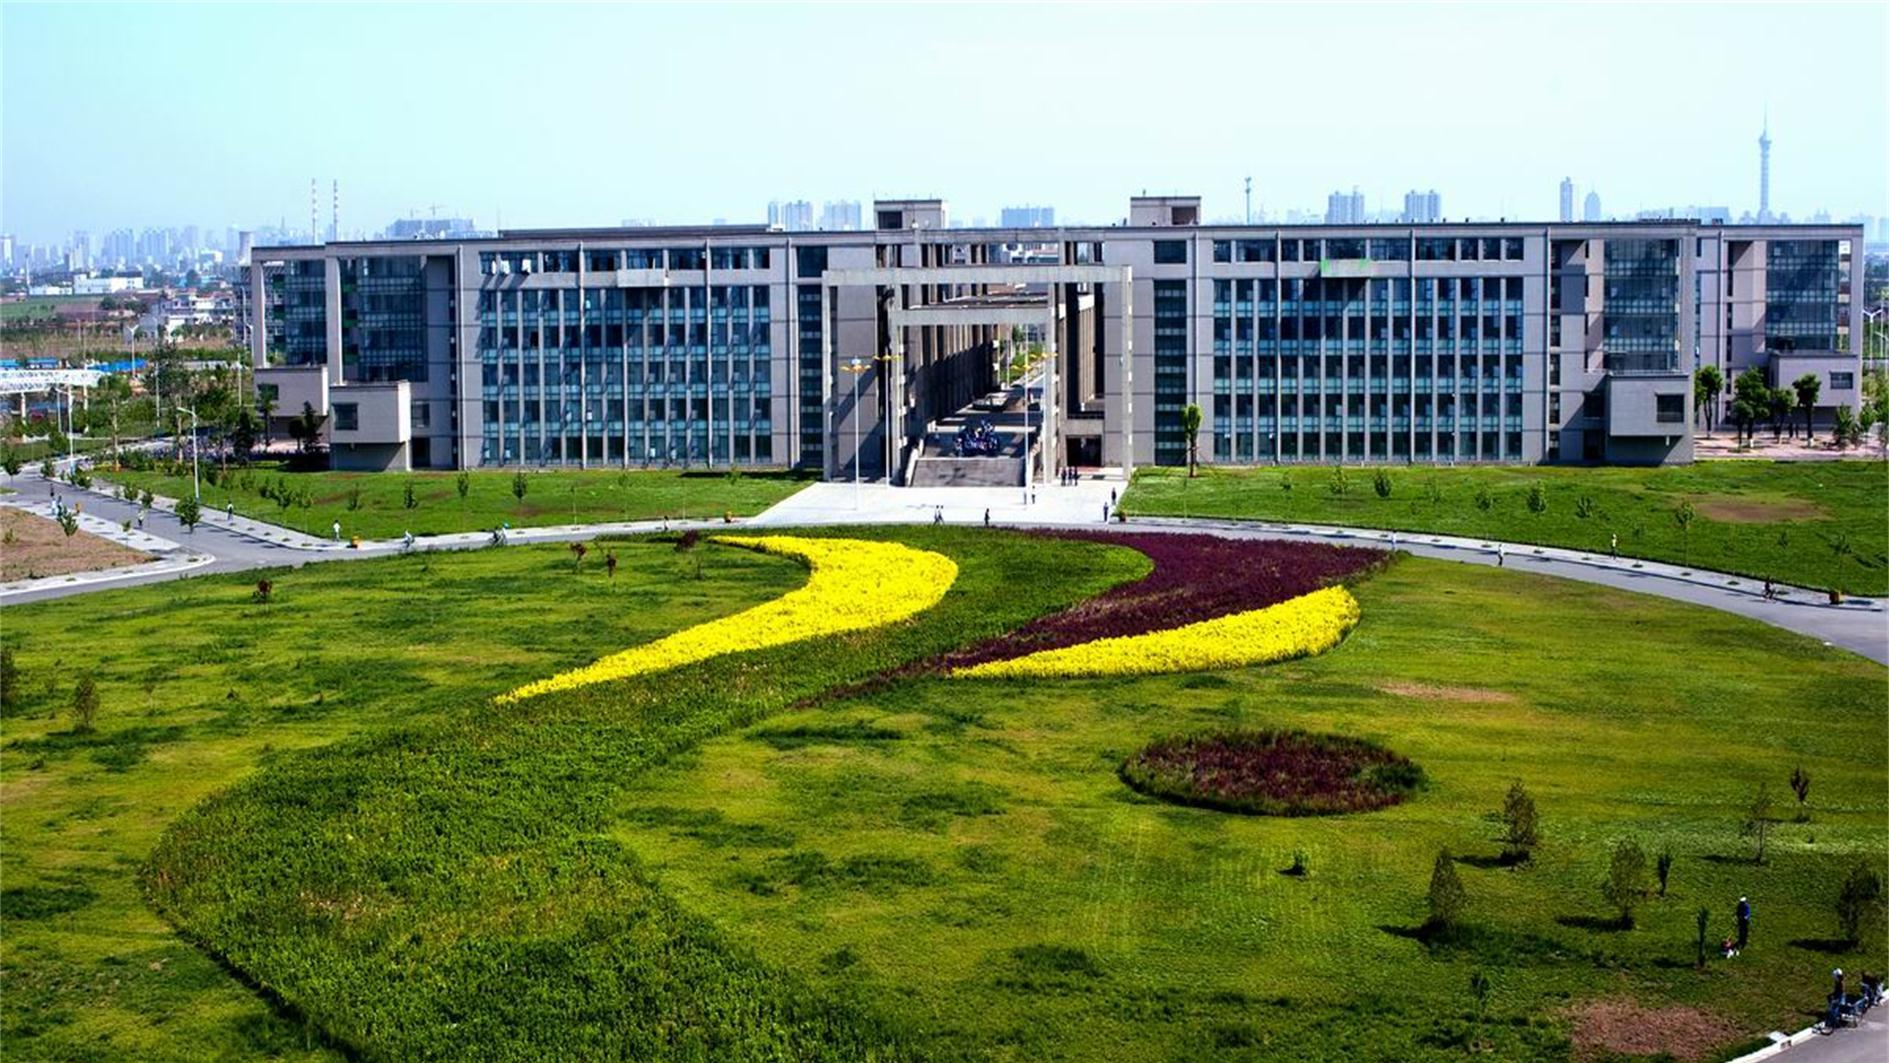 邯郸大学位置图片